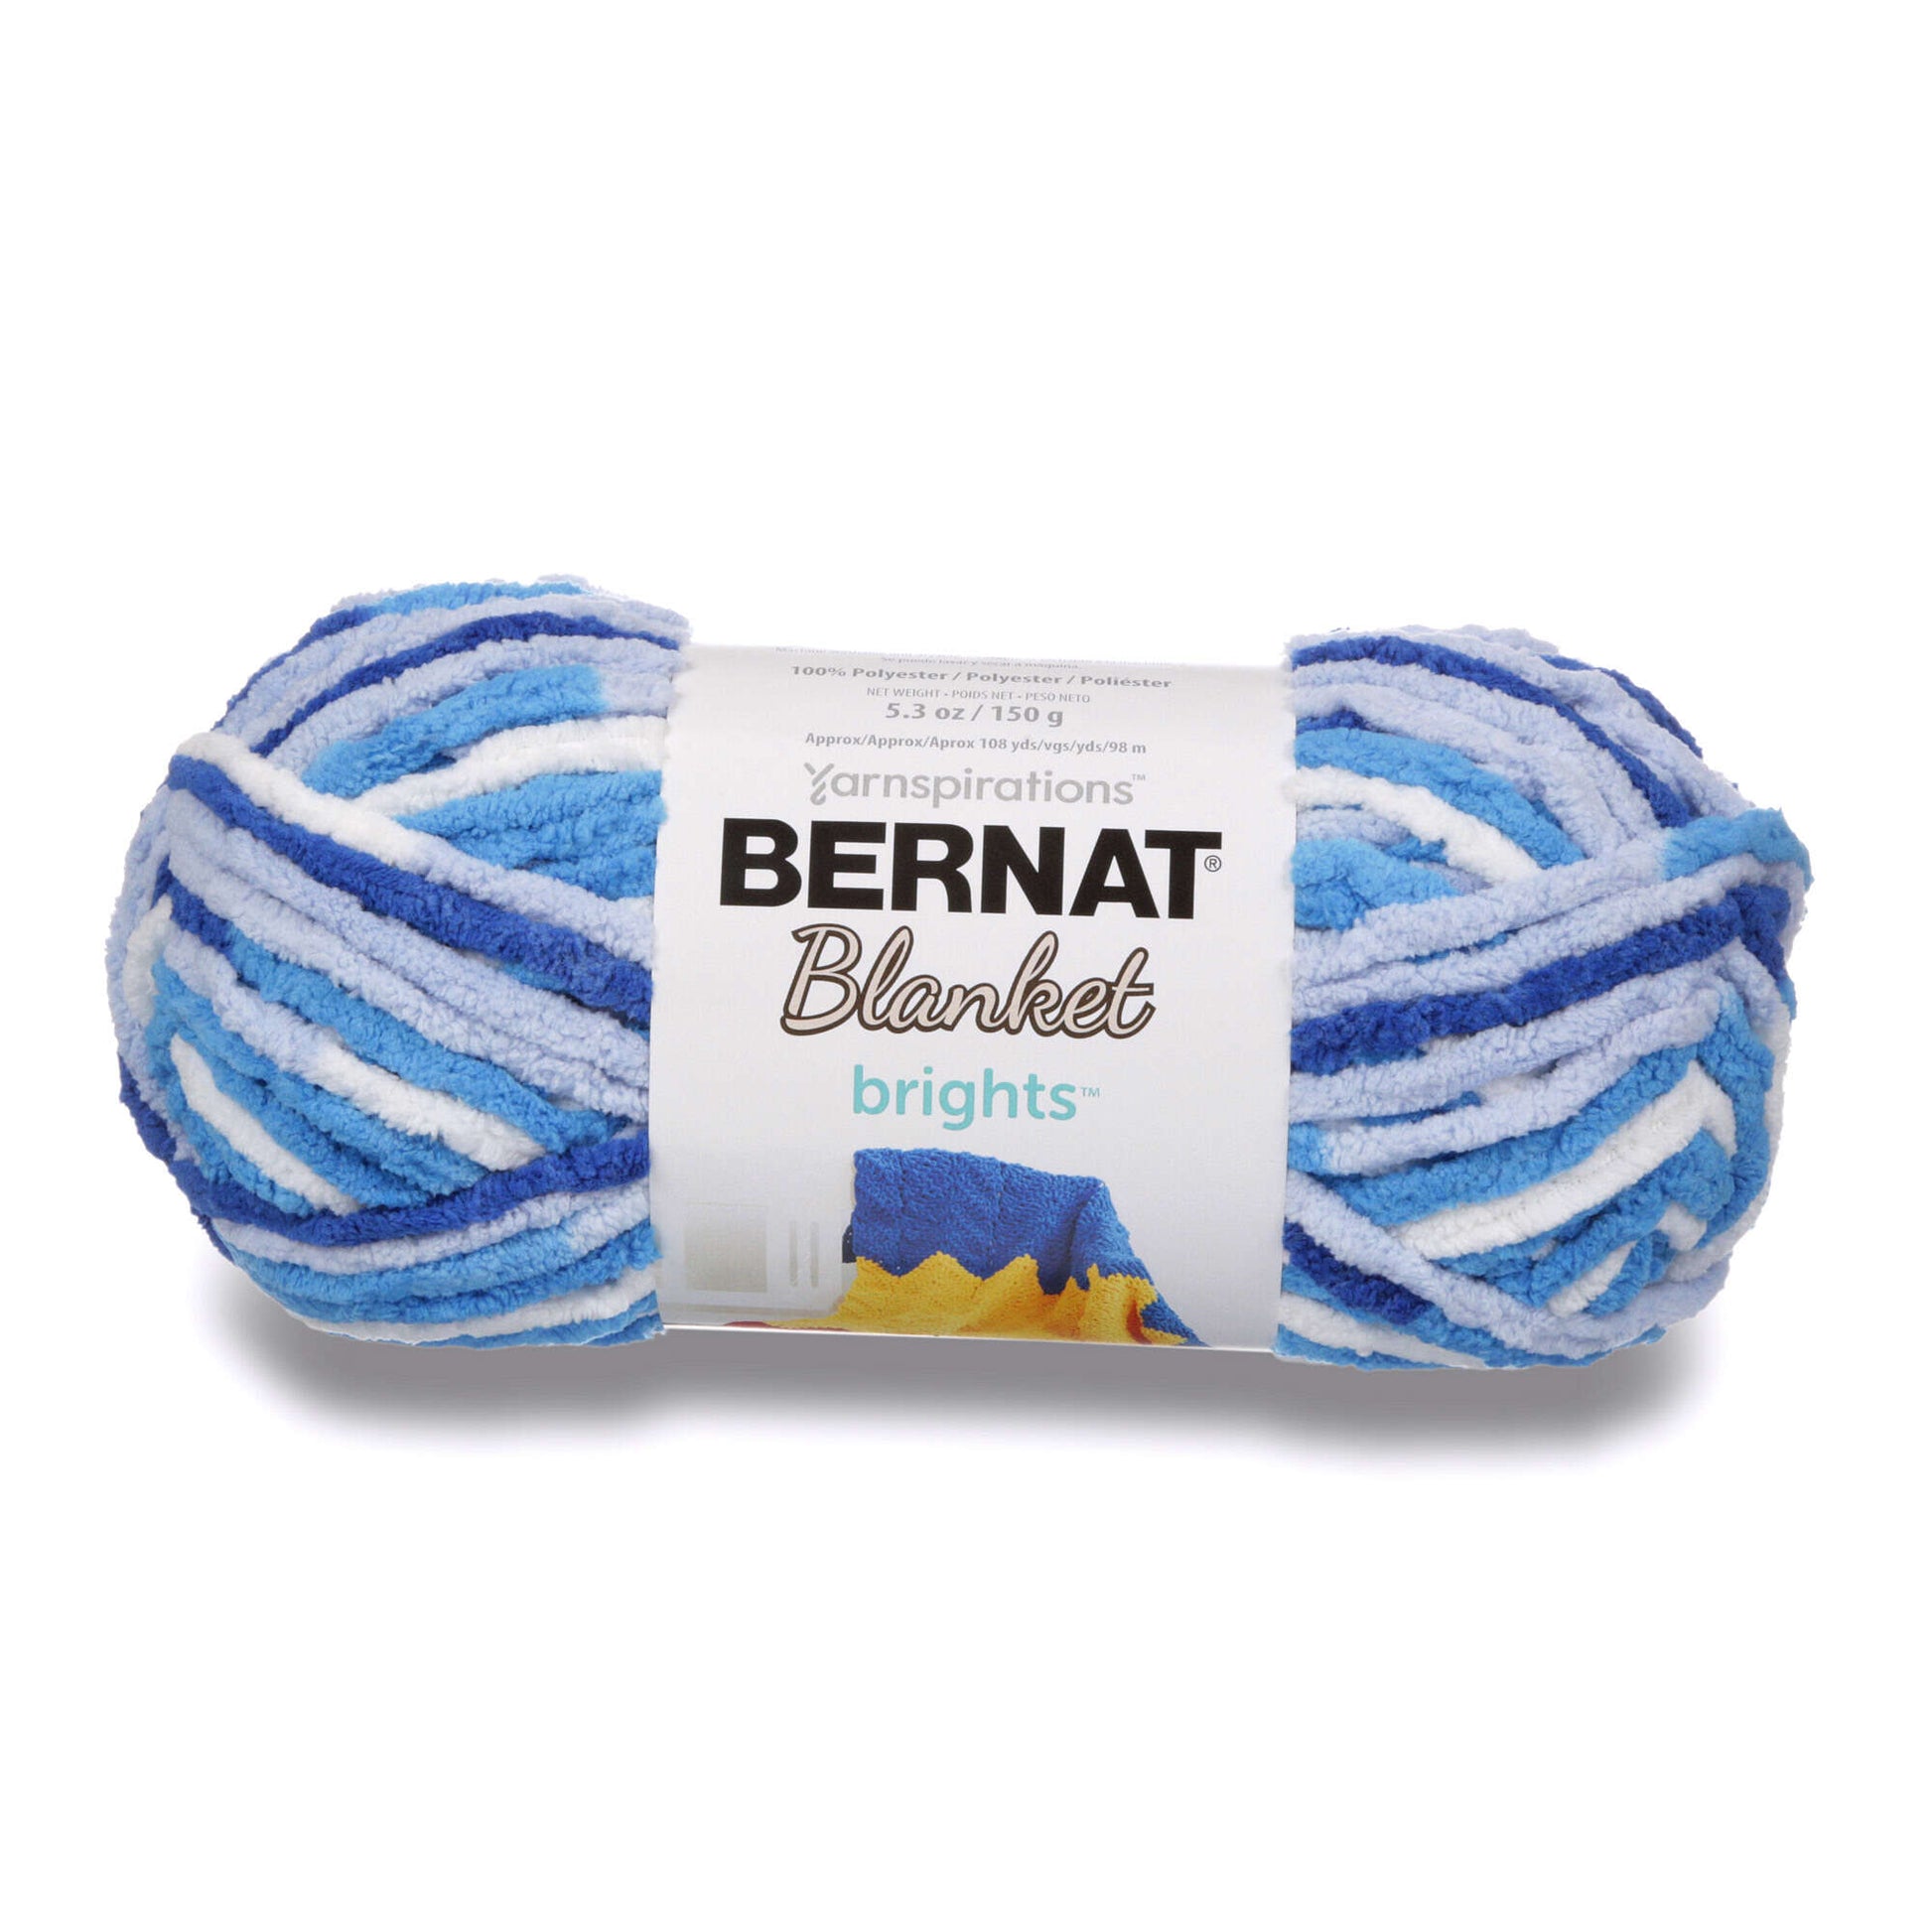 Bernat Blanket Brights Yarn - Clearance Shades* Waterslide Varg